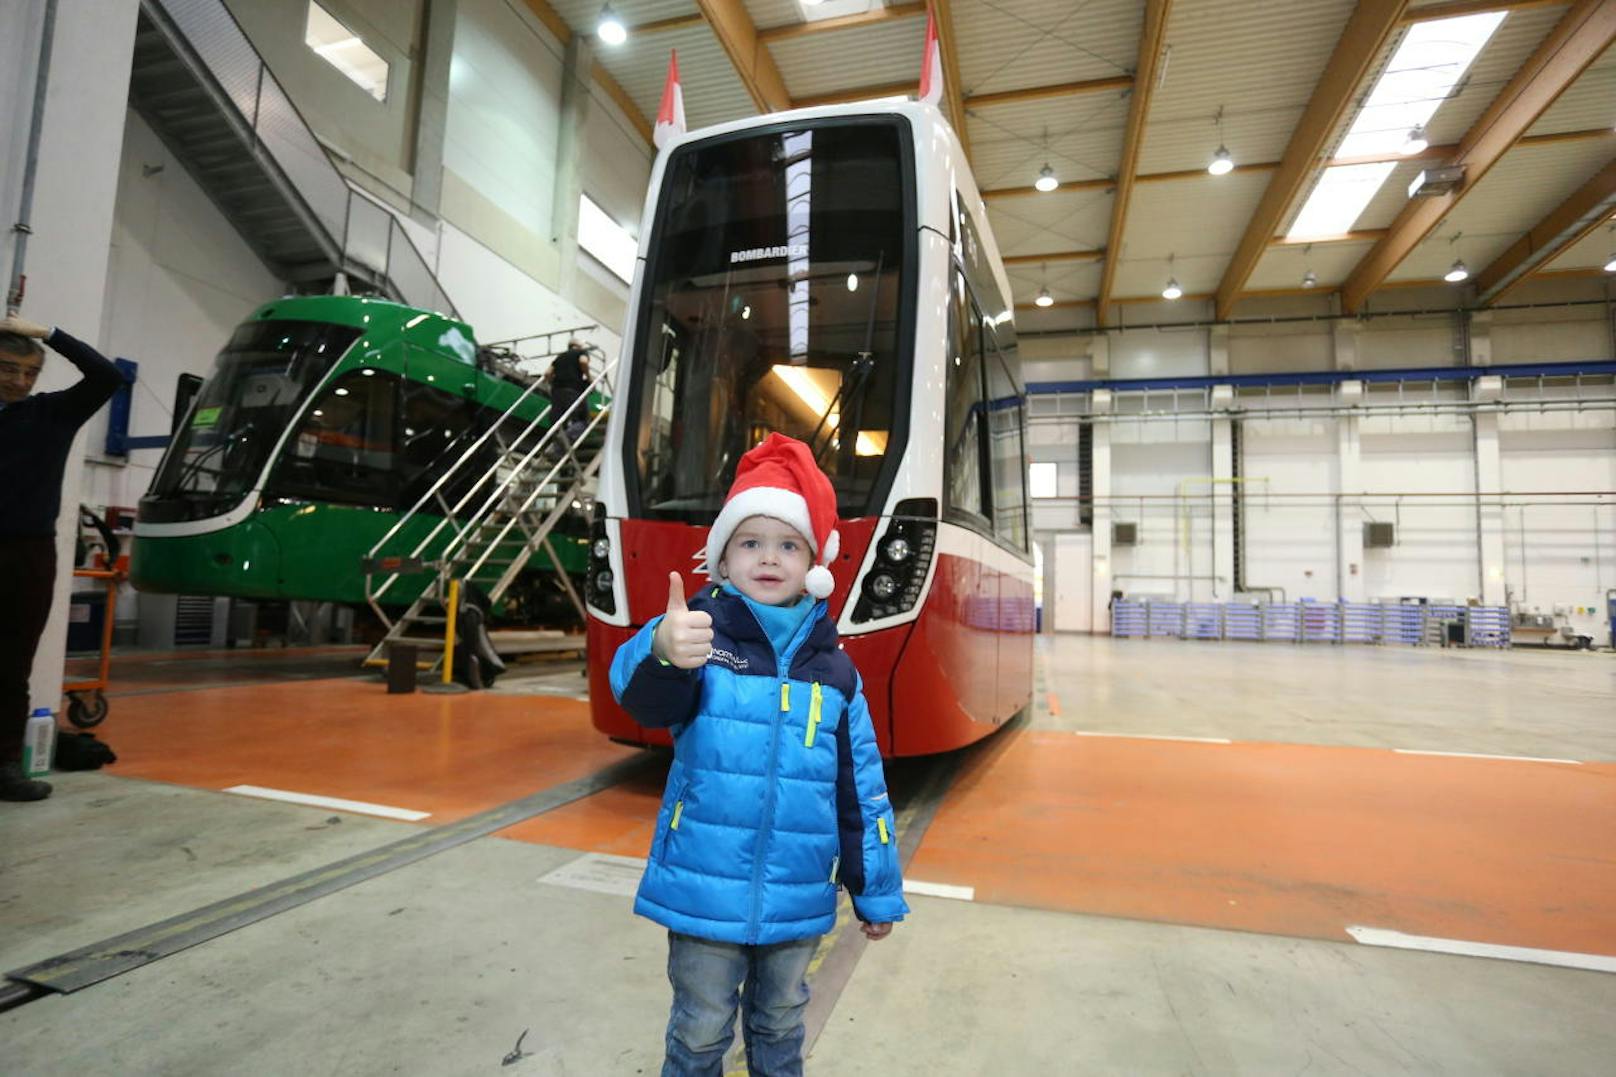 Mateos Fazit: Der Besuch des Bombardier-Werkes war top!